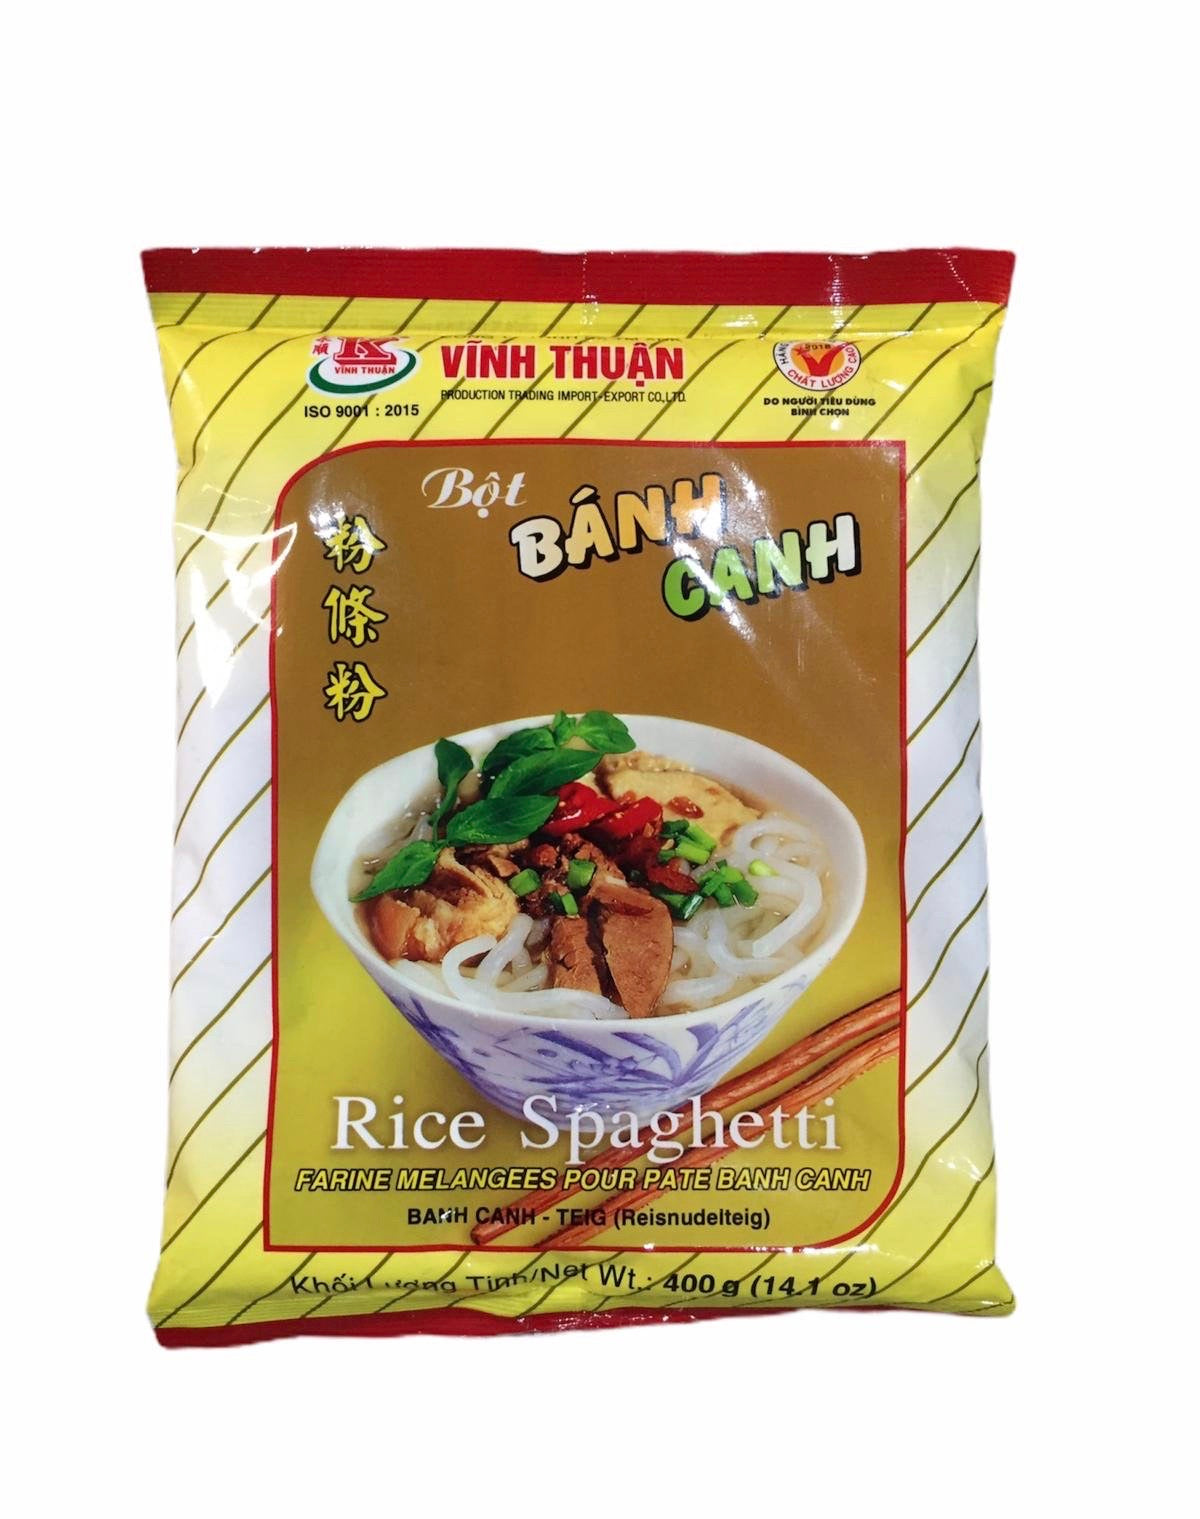 Vinh Thuan Rice Spaghetti 400g- Bột bánh canh Vĩnh Thuận 400g